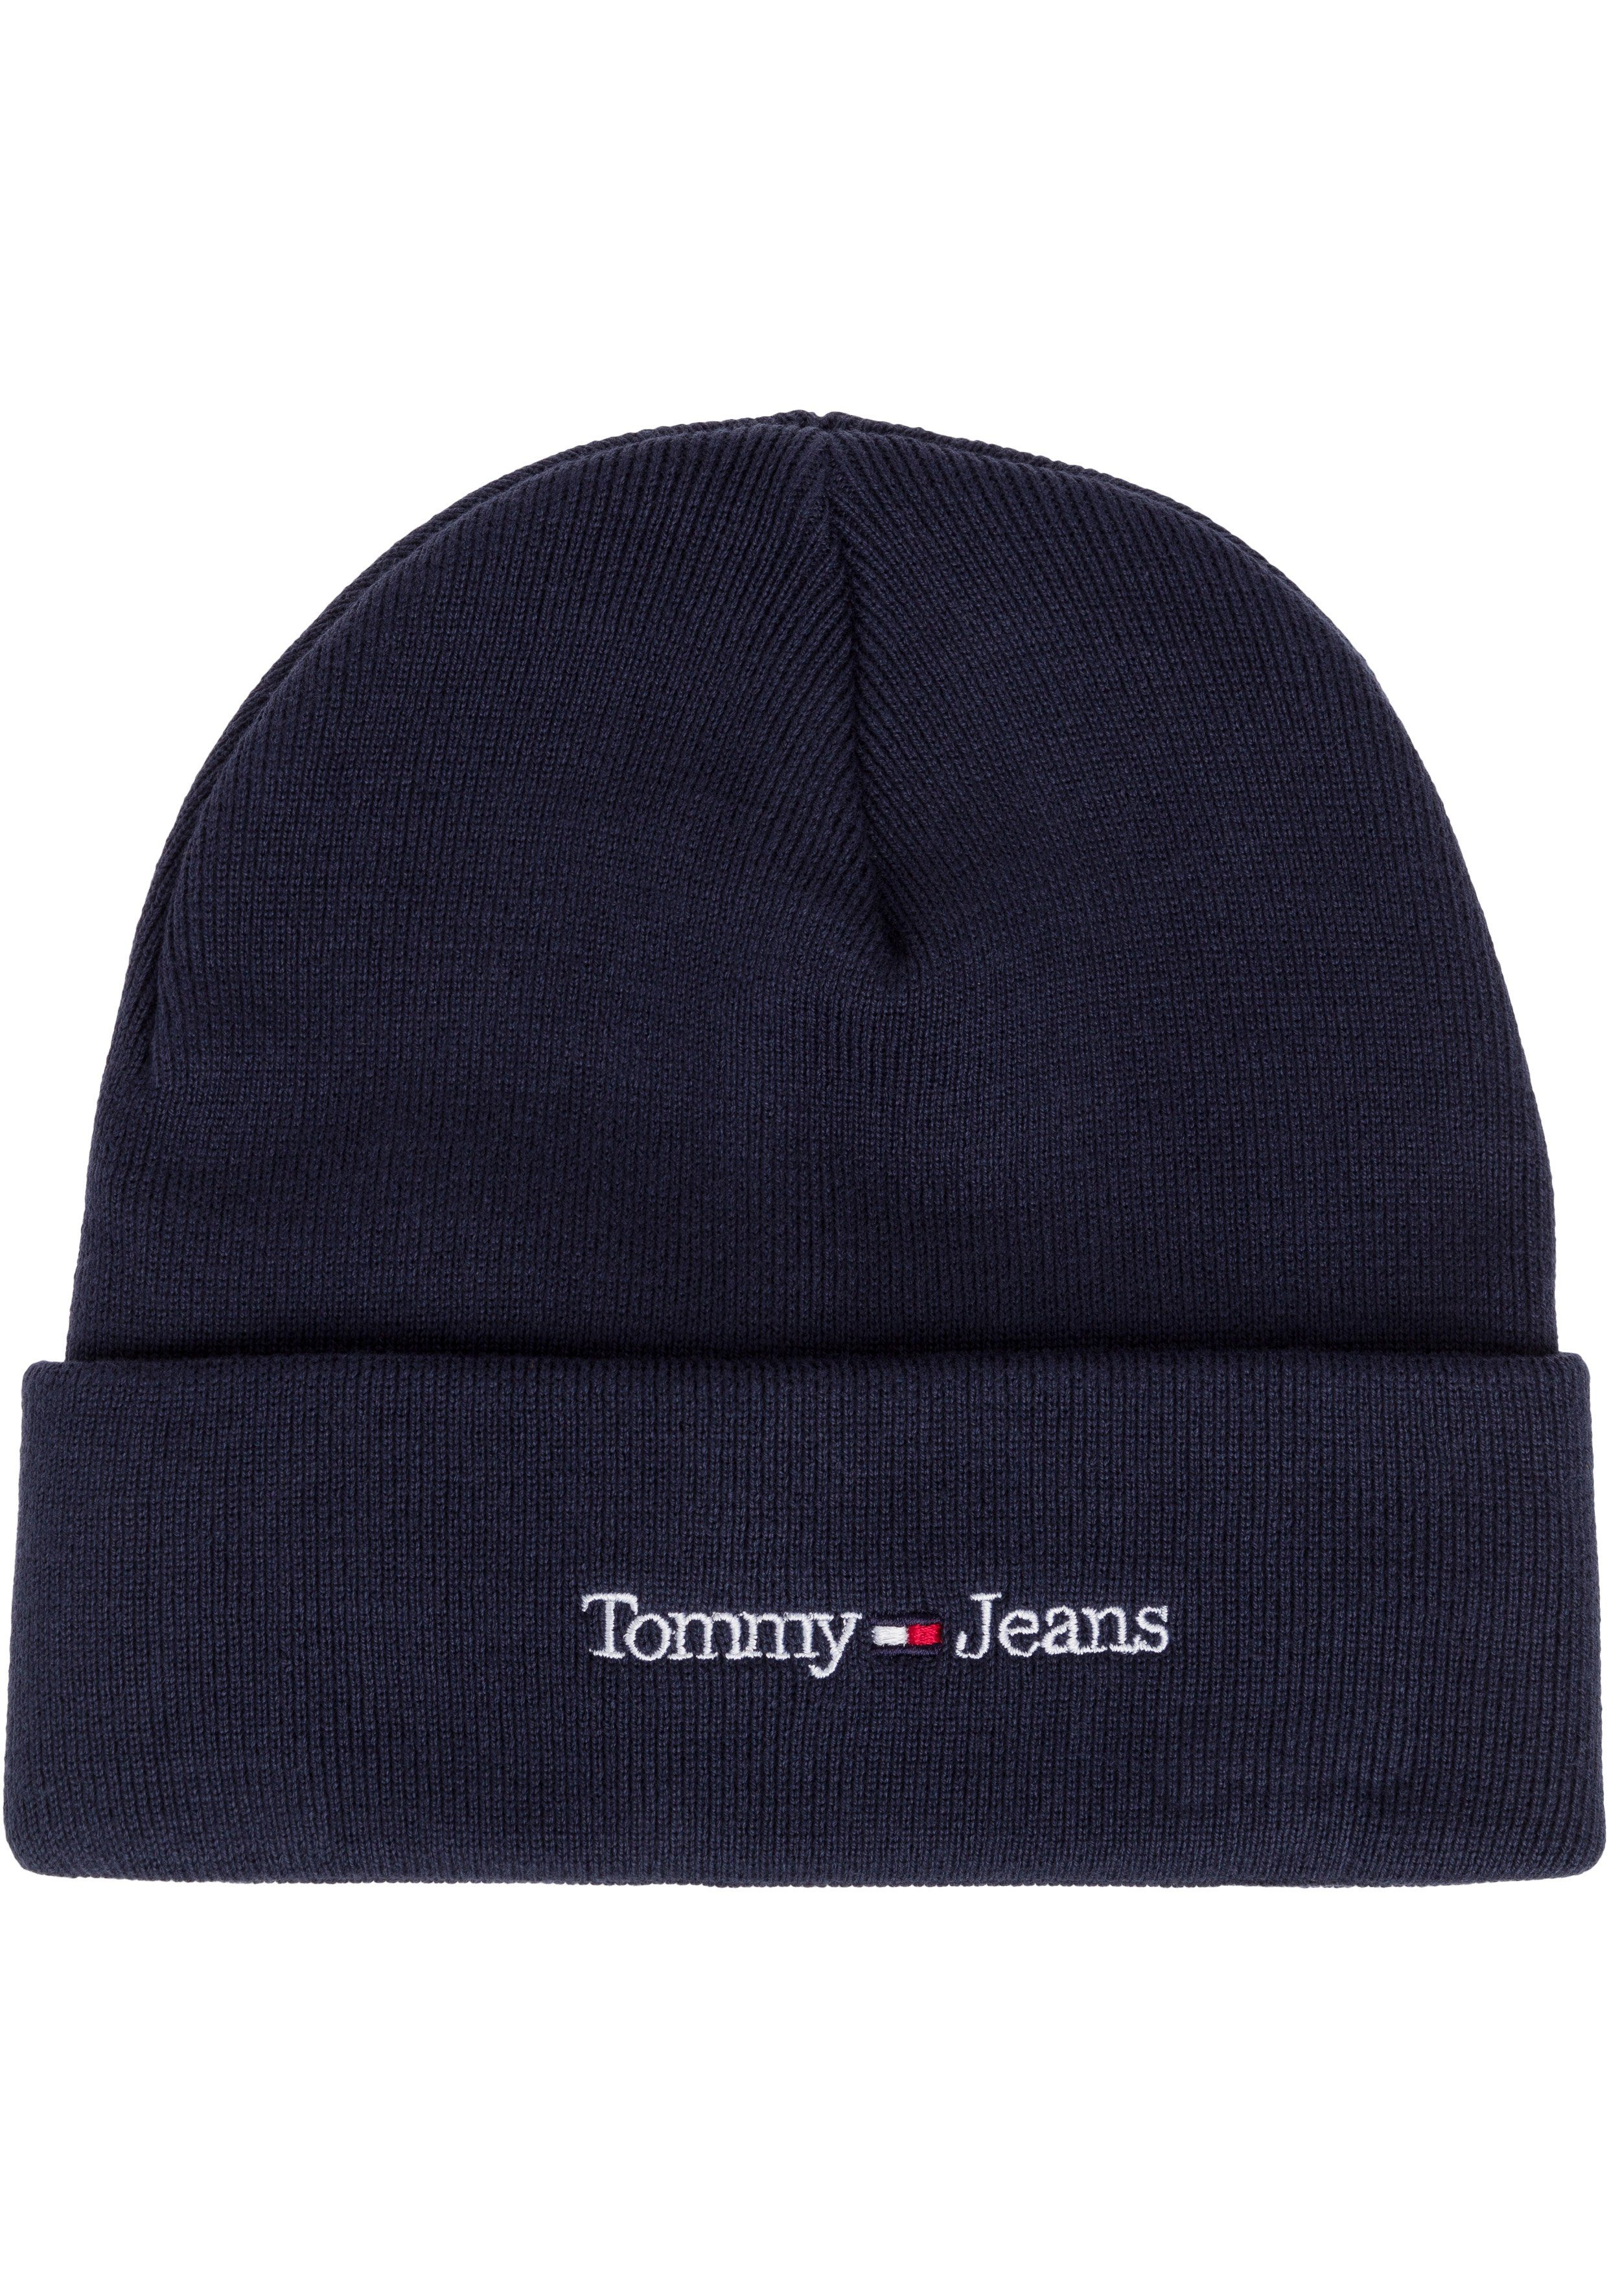 Tommy Jeans Eigenschaften cooler wärmenden Beanie Style mit navy